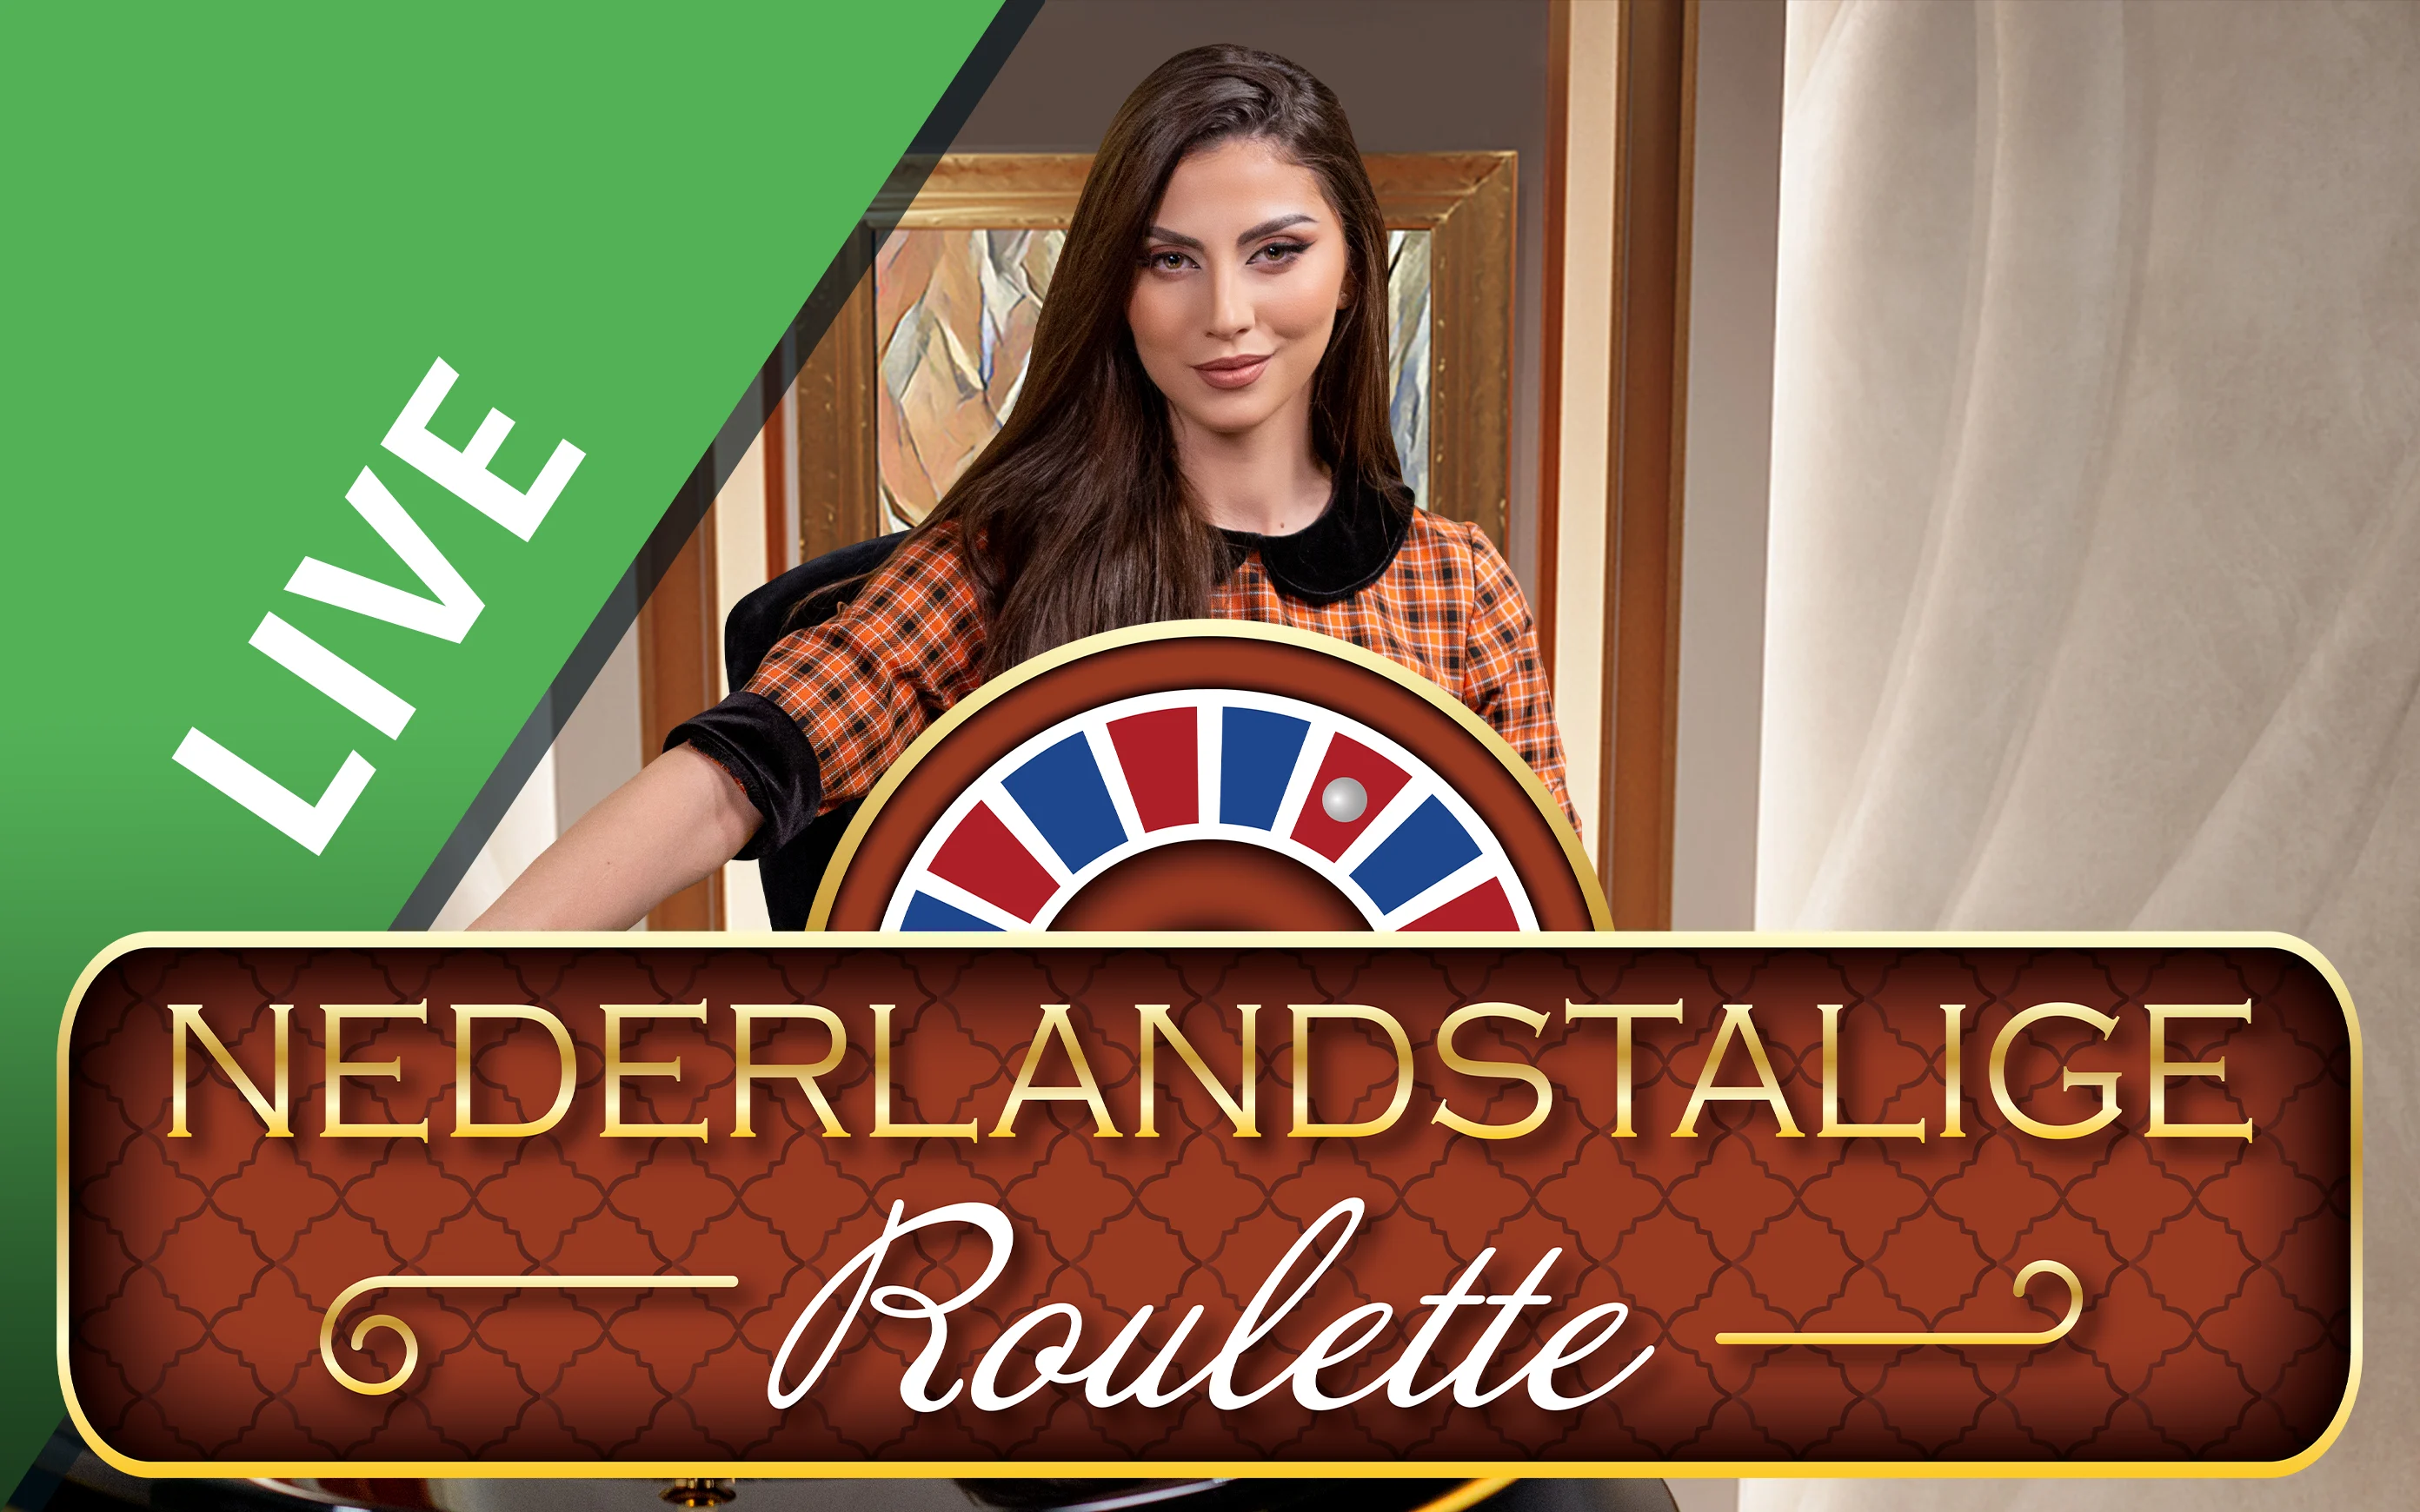 Gioca a Nederlandstalige Roulette sul casino online Starcasino.be